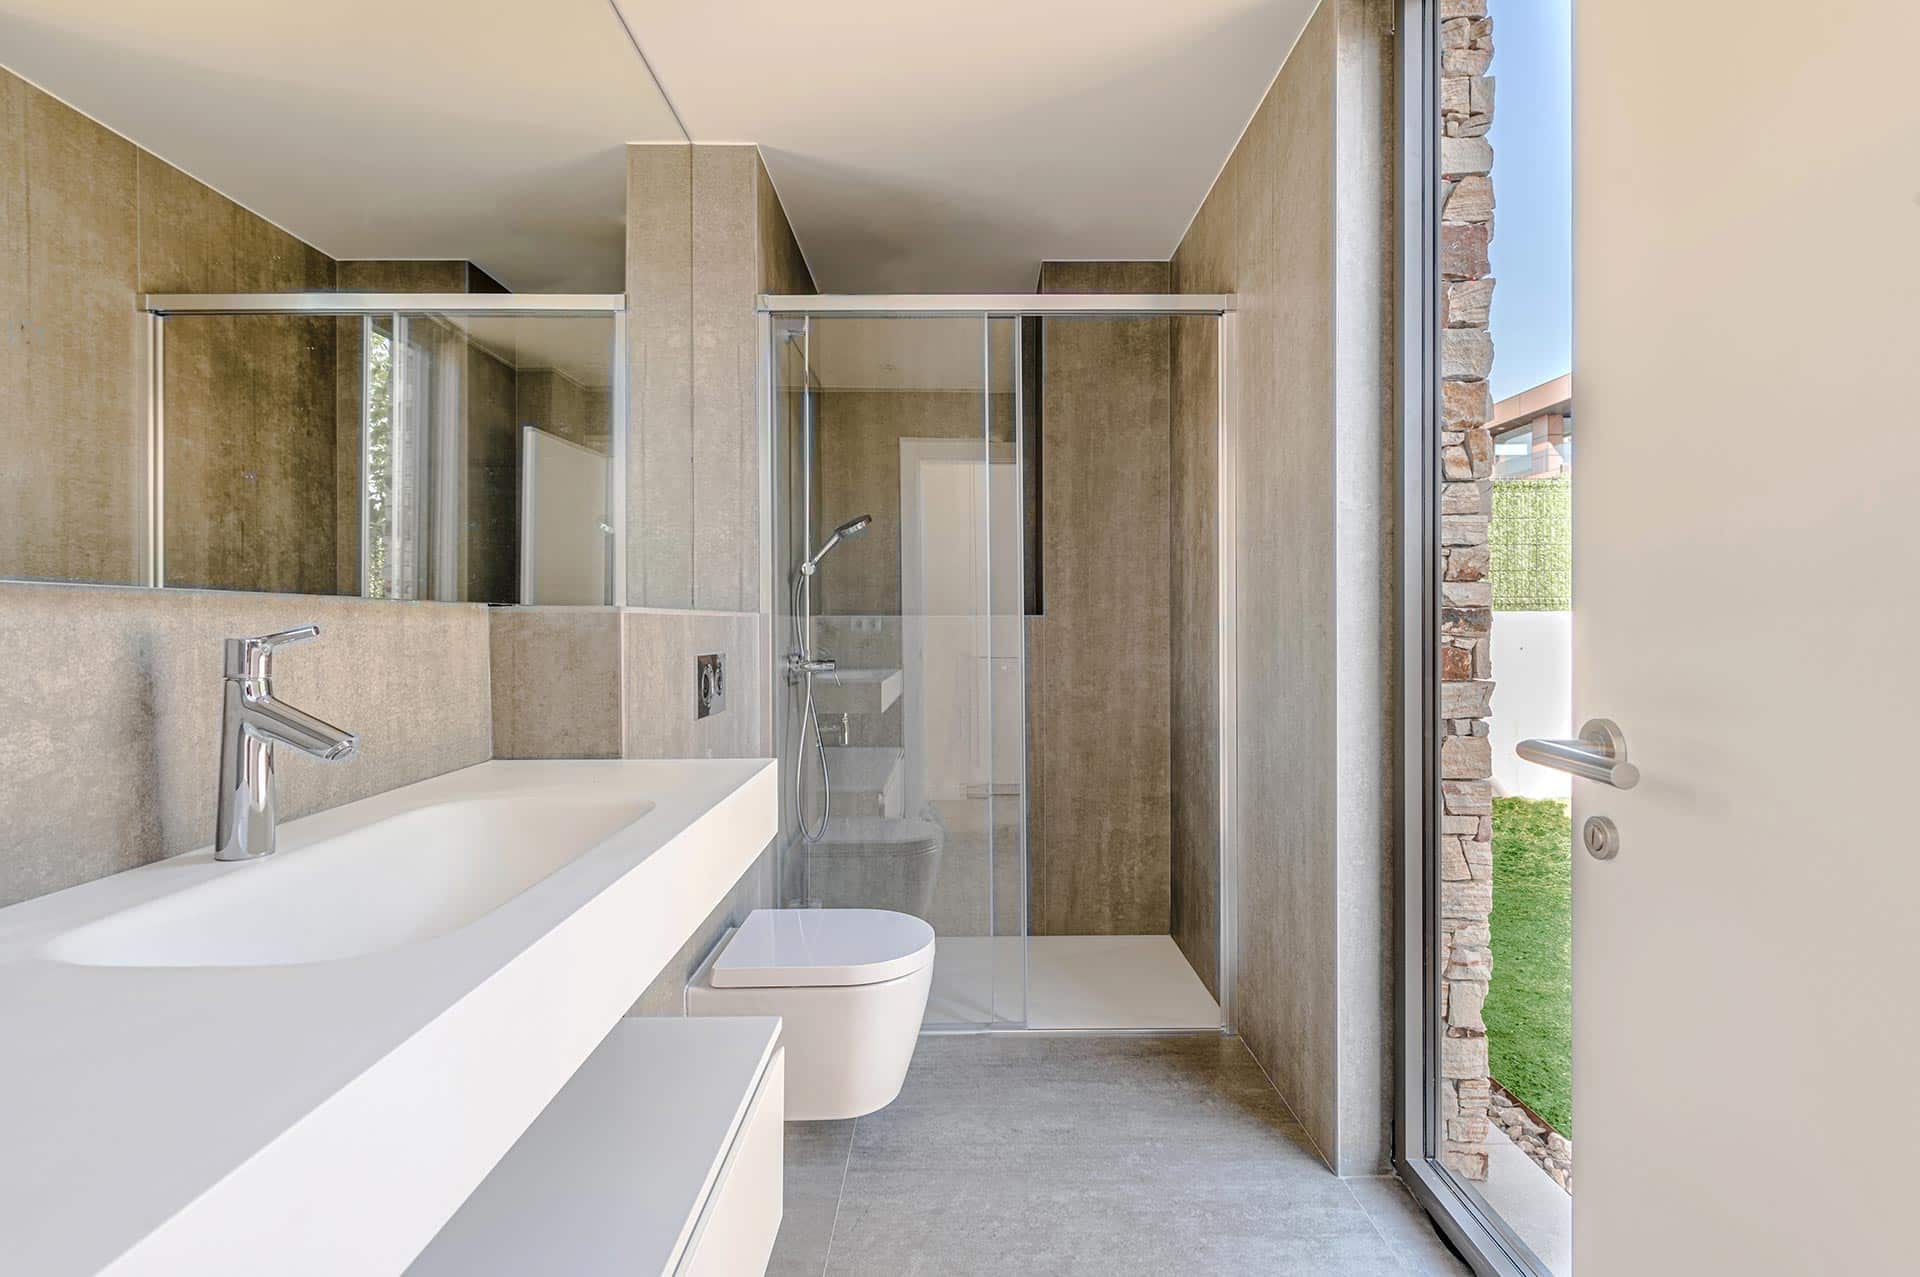 Baño minimalista con gres porcelanico gris en vivienda diseñada por Moah Arquitectos en Piélagos. Cantabria